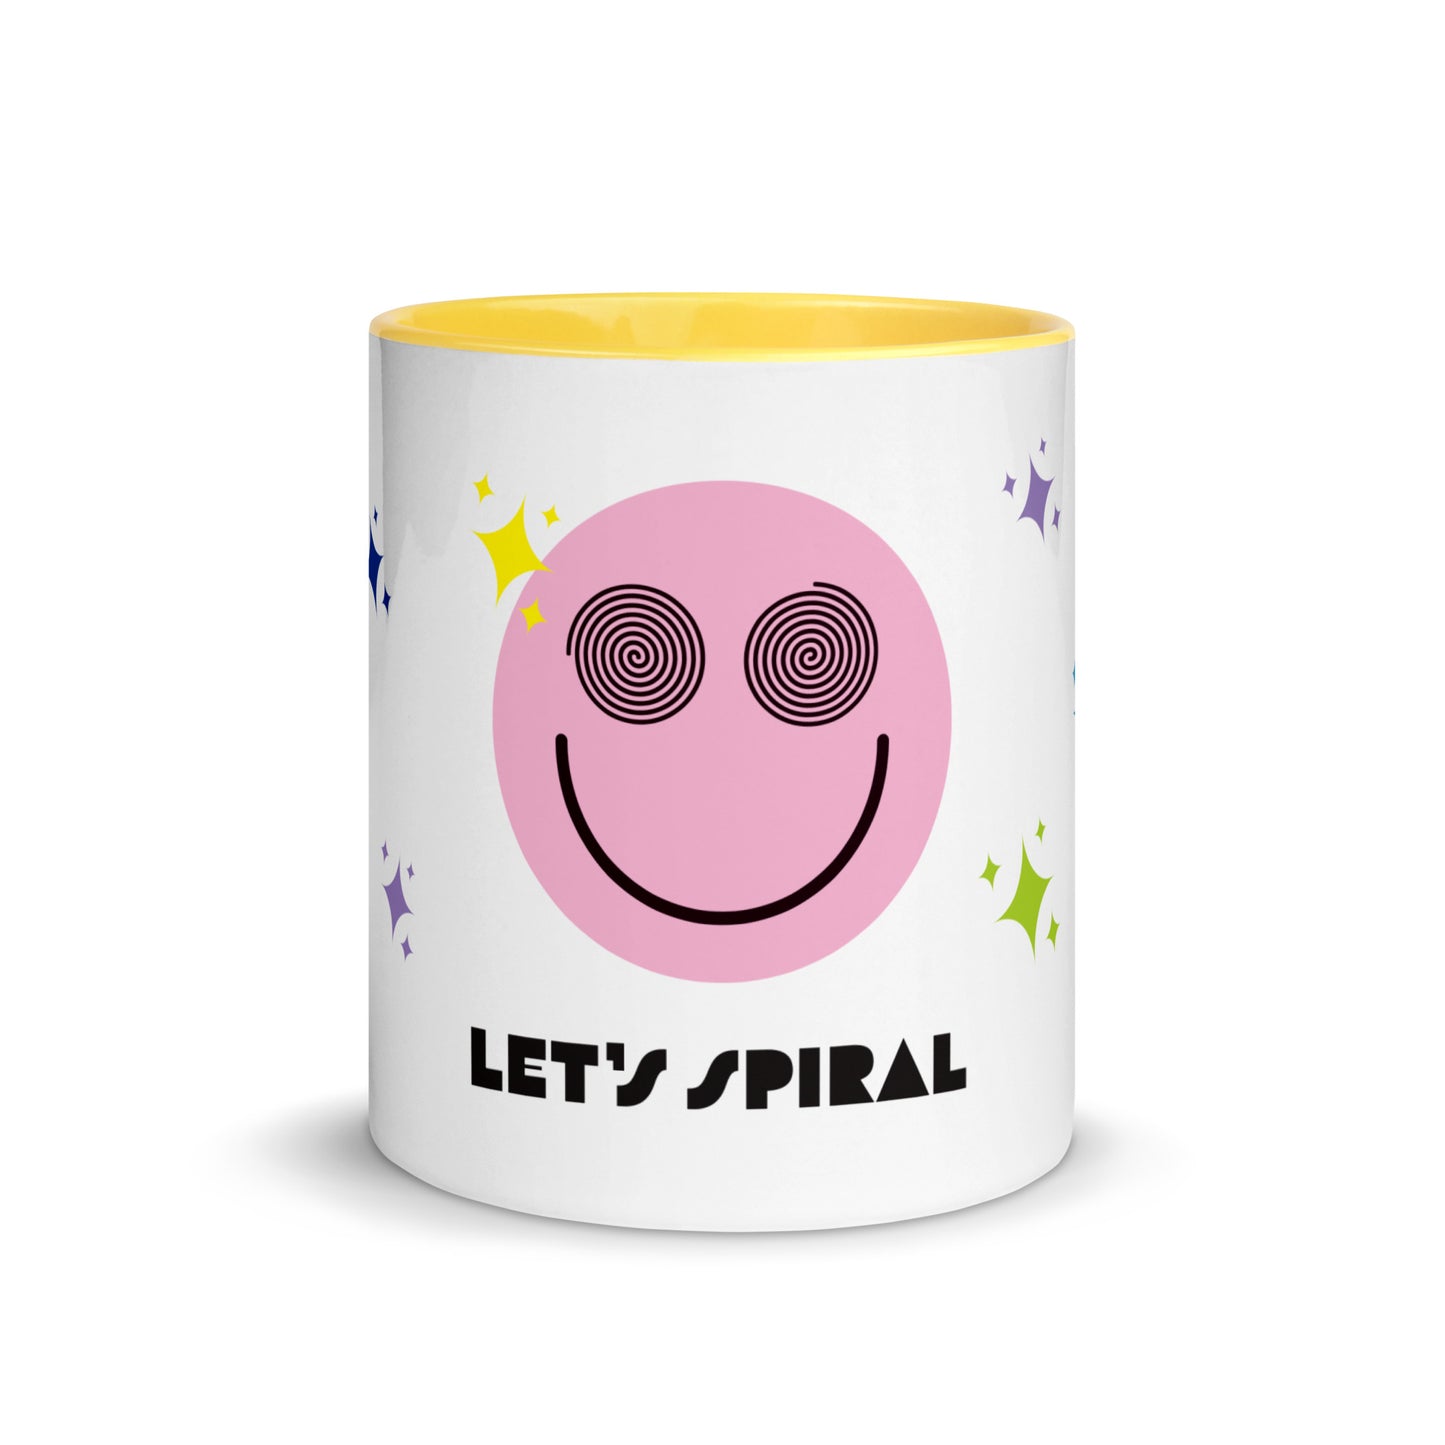 Let’s Spiral! Mug